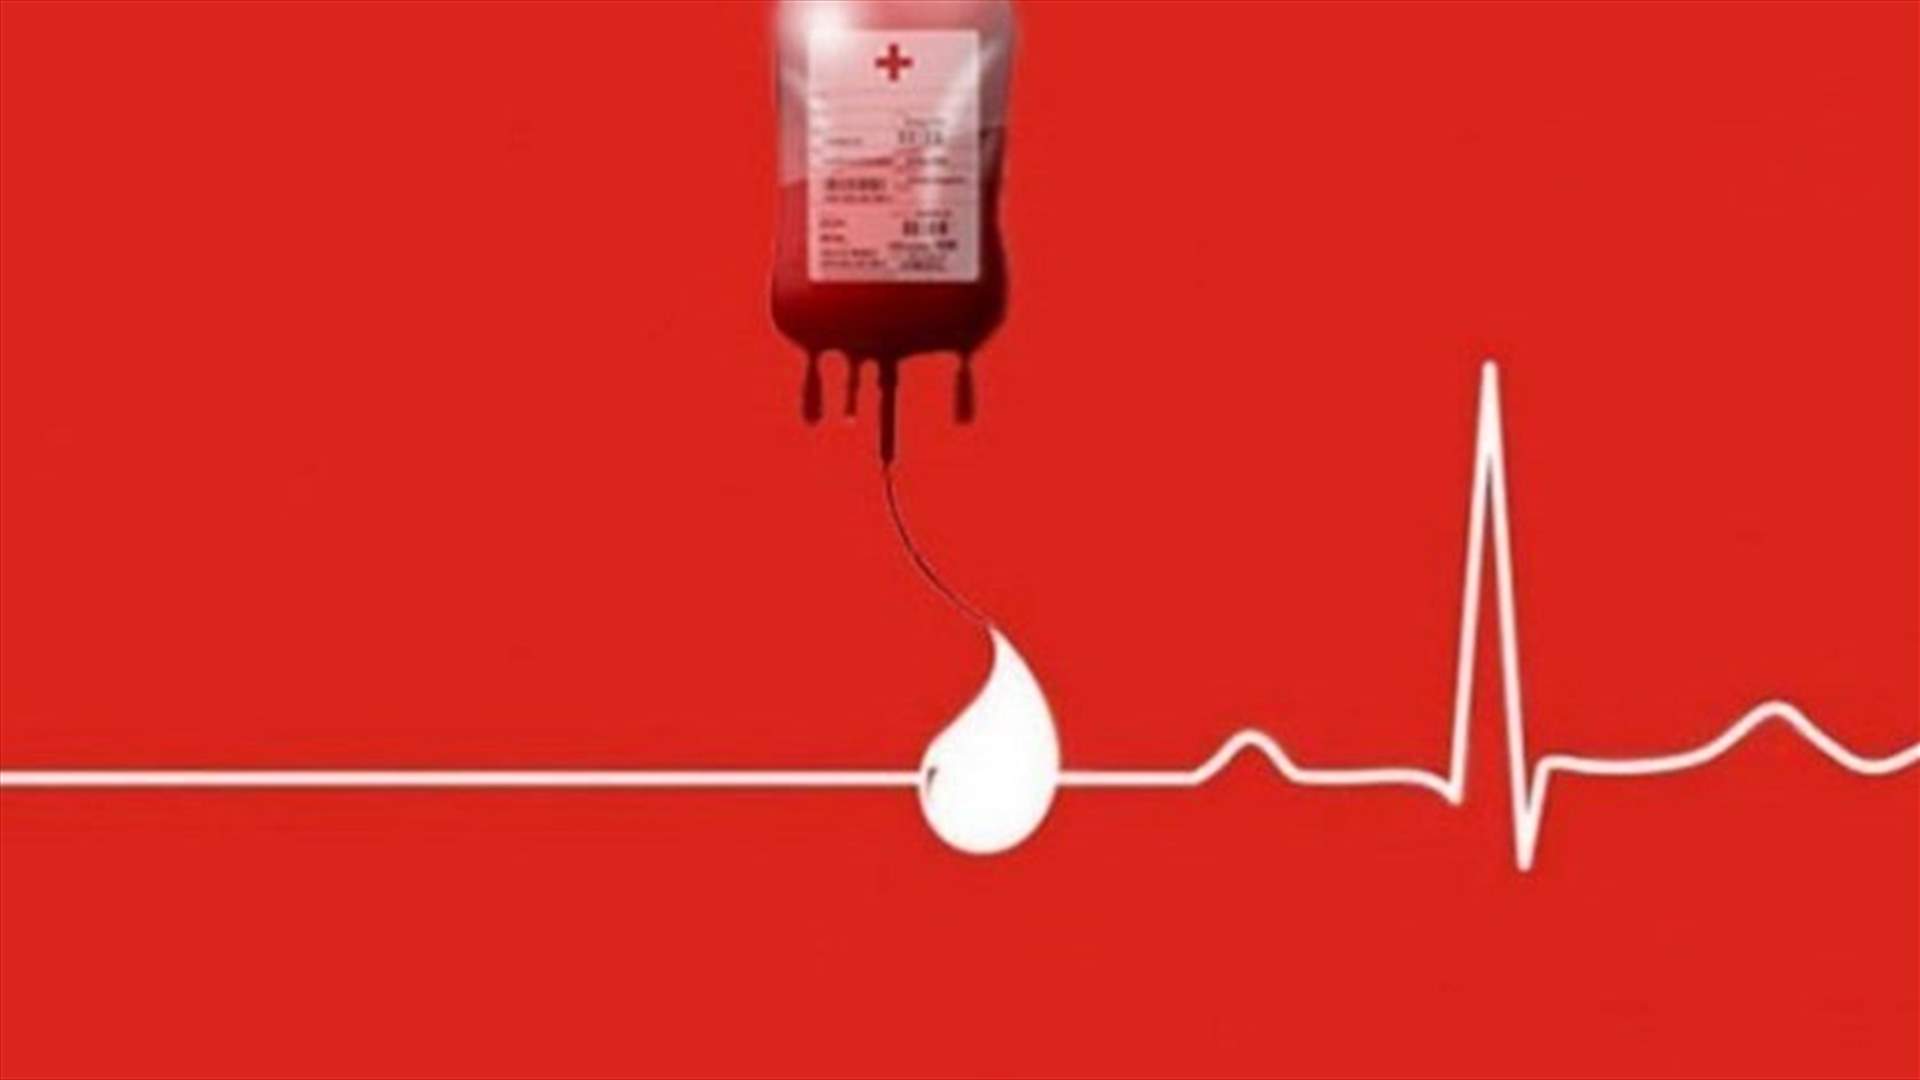 مريض في مستشفى اوتيل ديو بحاجة لـ٦ وحدات دم من فئة AB+ و٢ بلاكيت دم من اي فئة كانت... للتبرع الرجاء الاتصال على الرقم التالي: 70612277